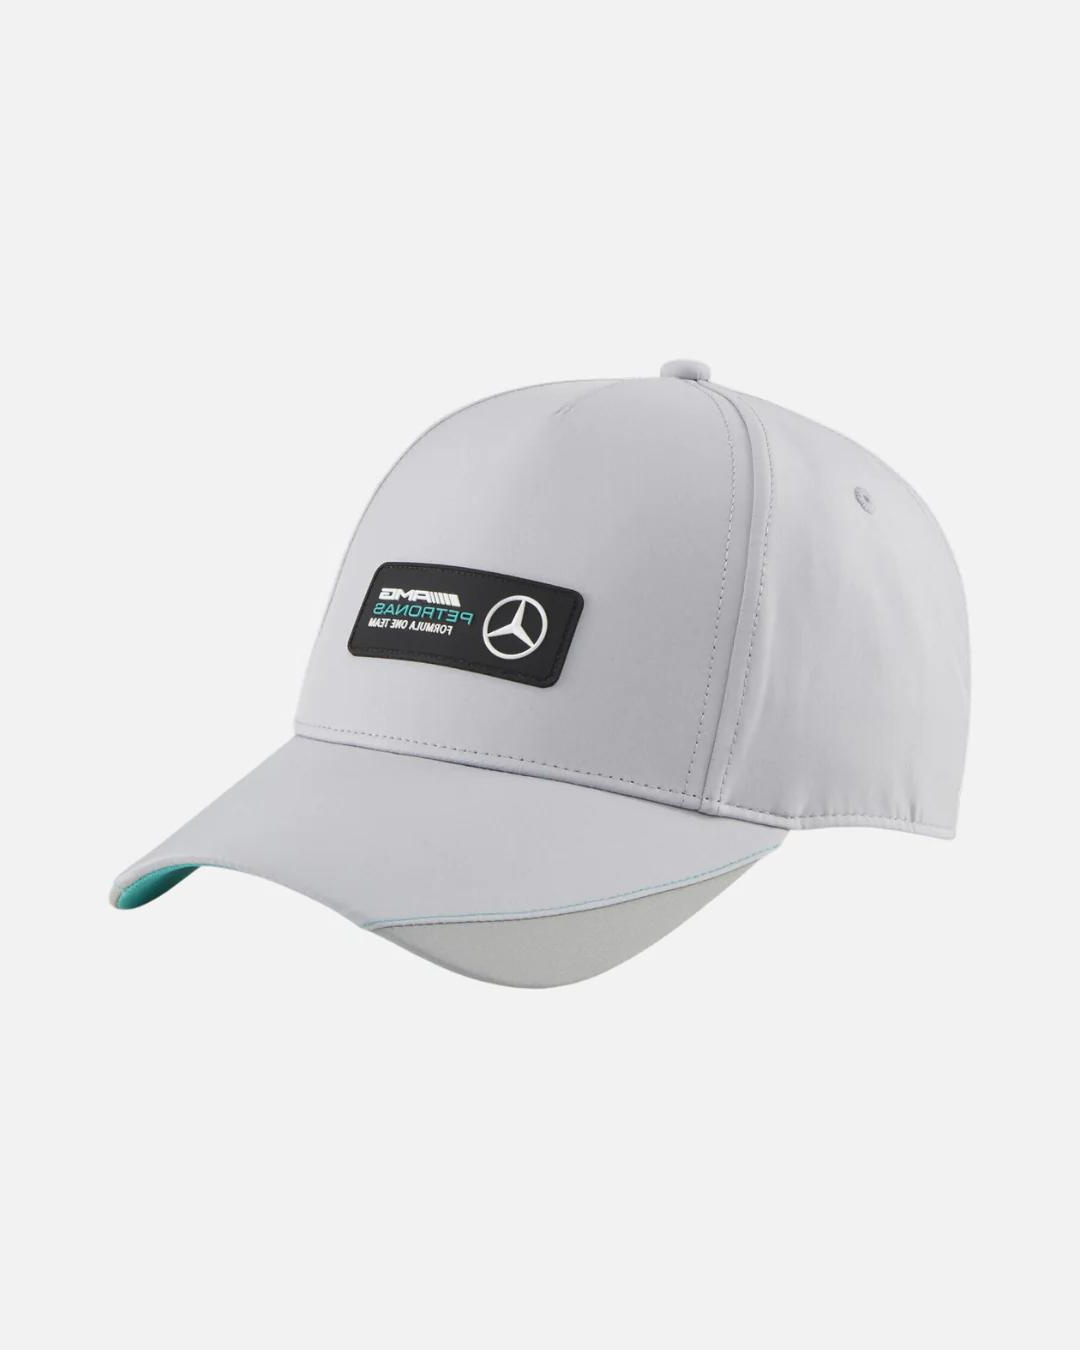 Puma Mercedes AMG Cap – Grau/Schwarz/Grün